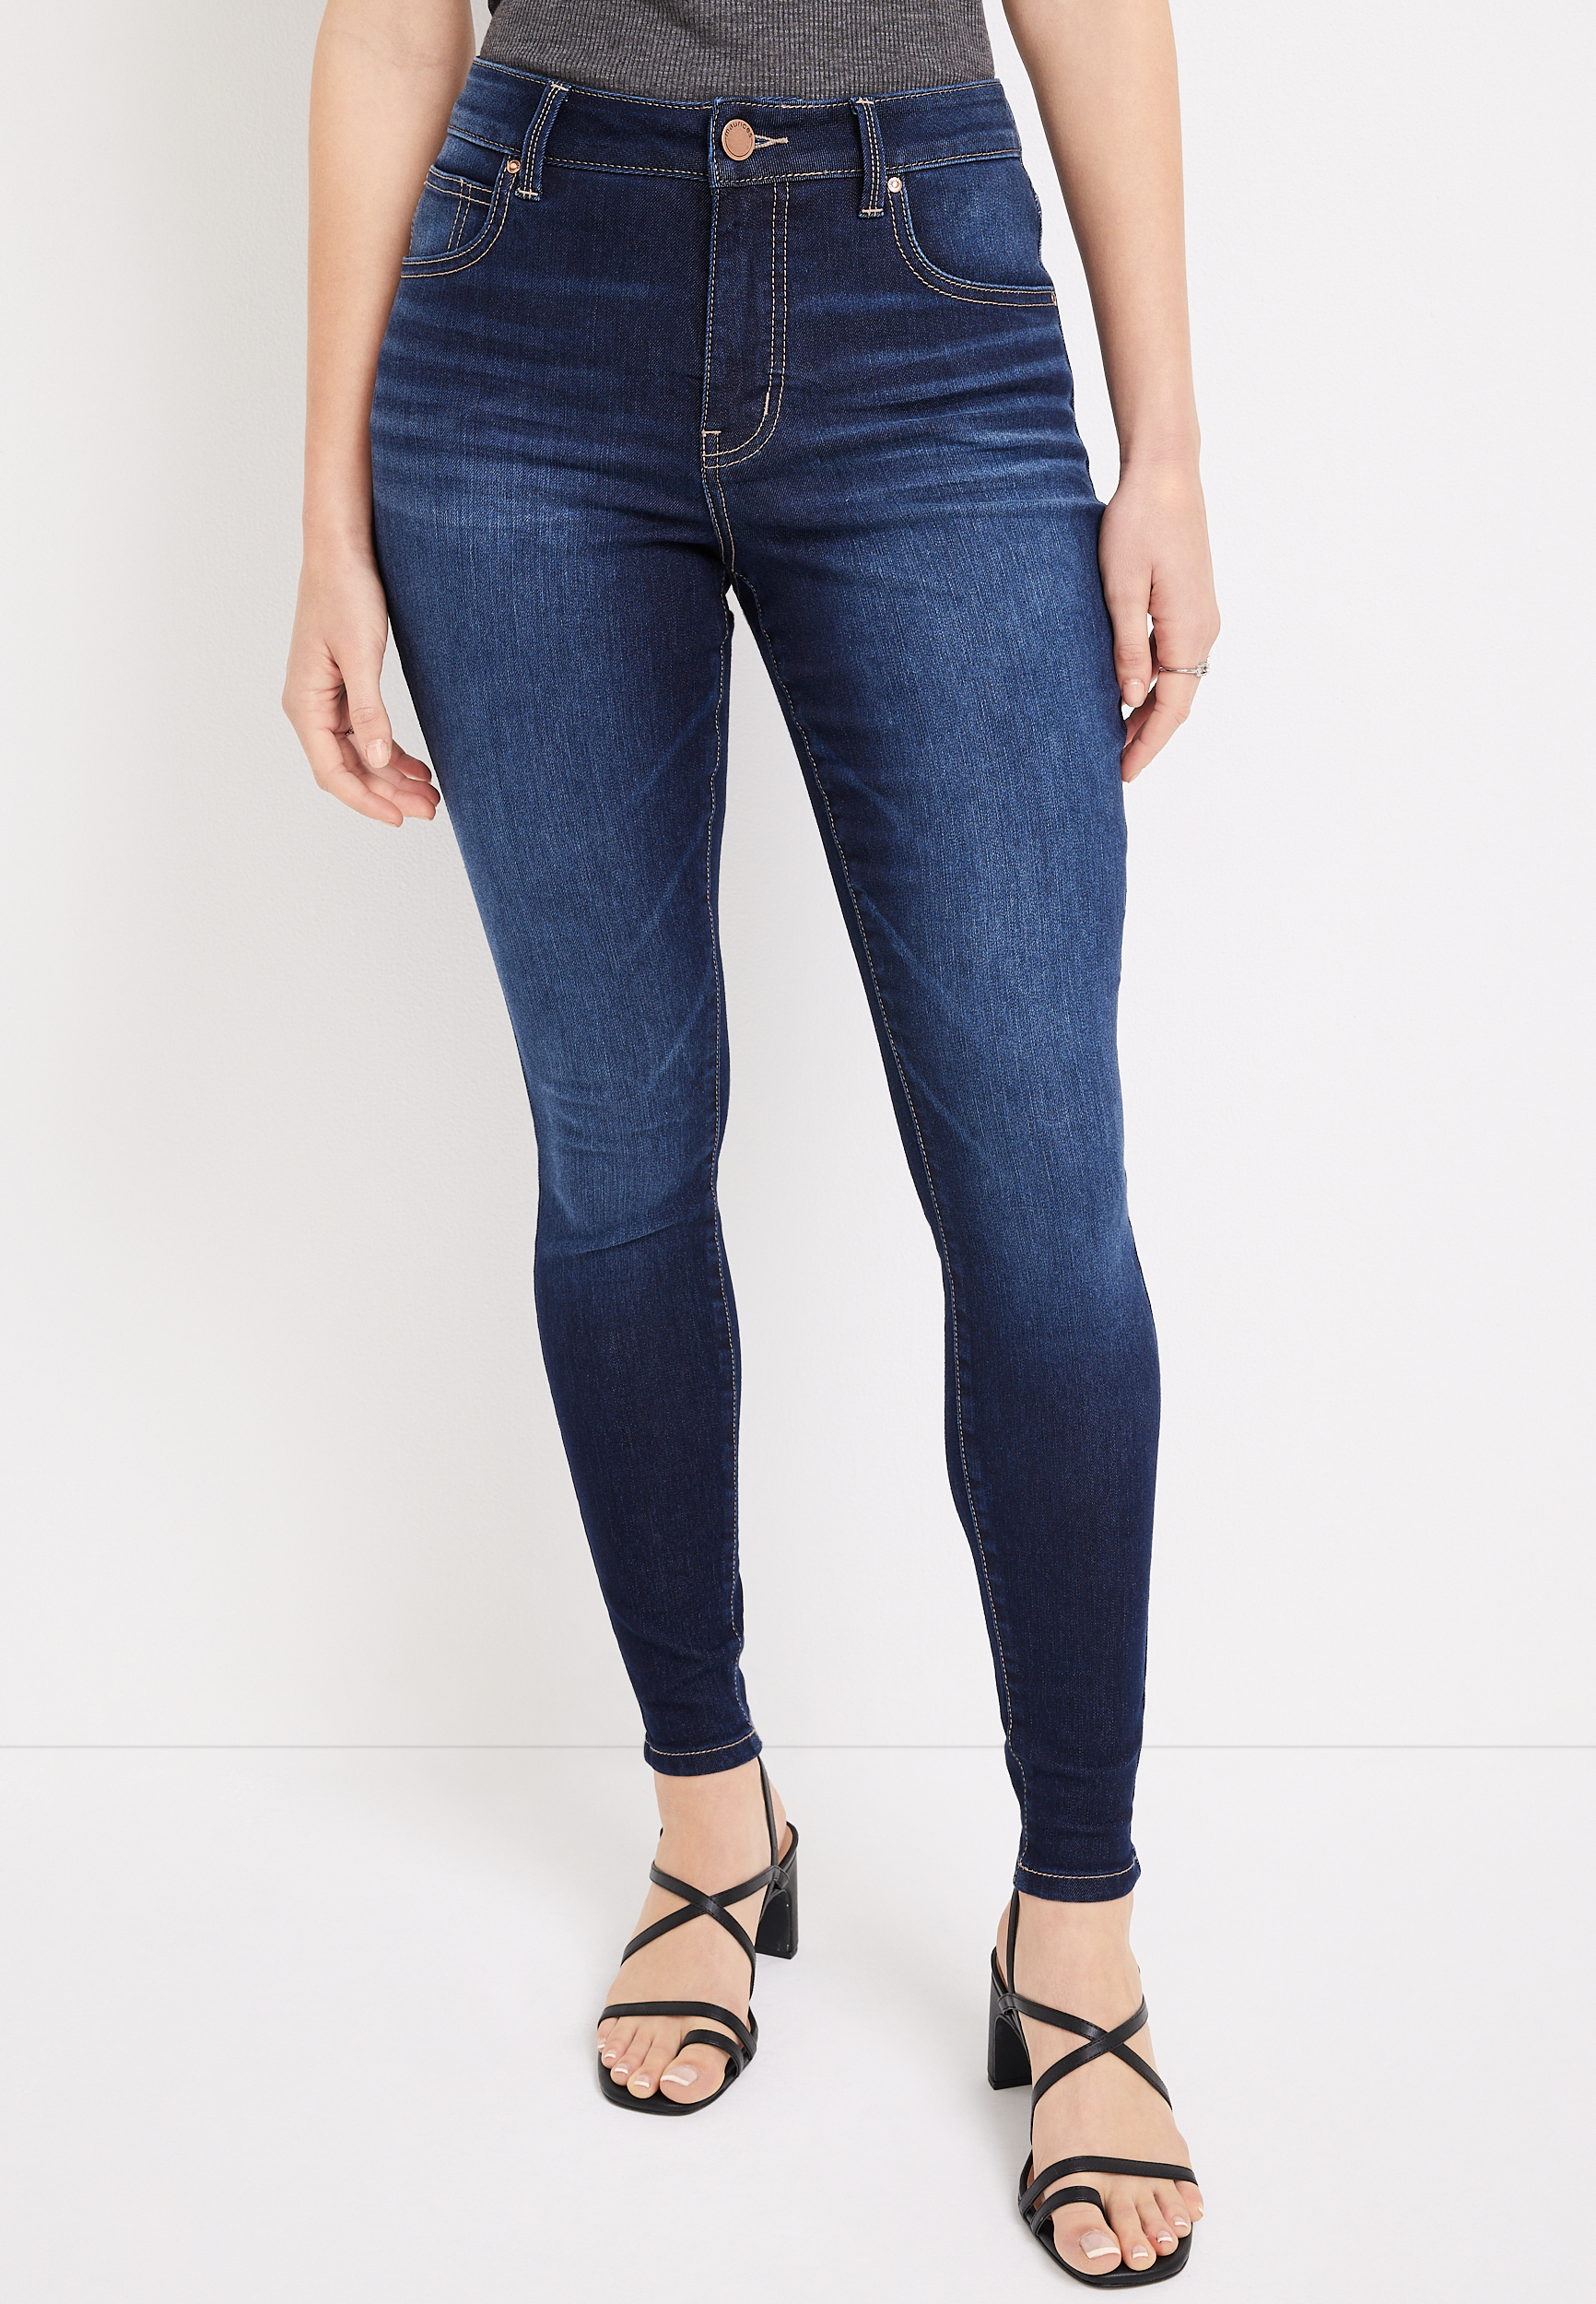 Everflex™ Jeans, Contour Shaping Jeans For Women